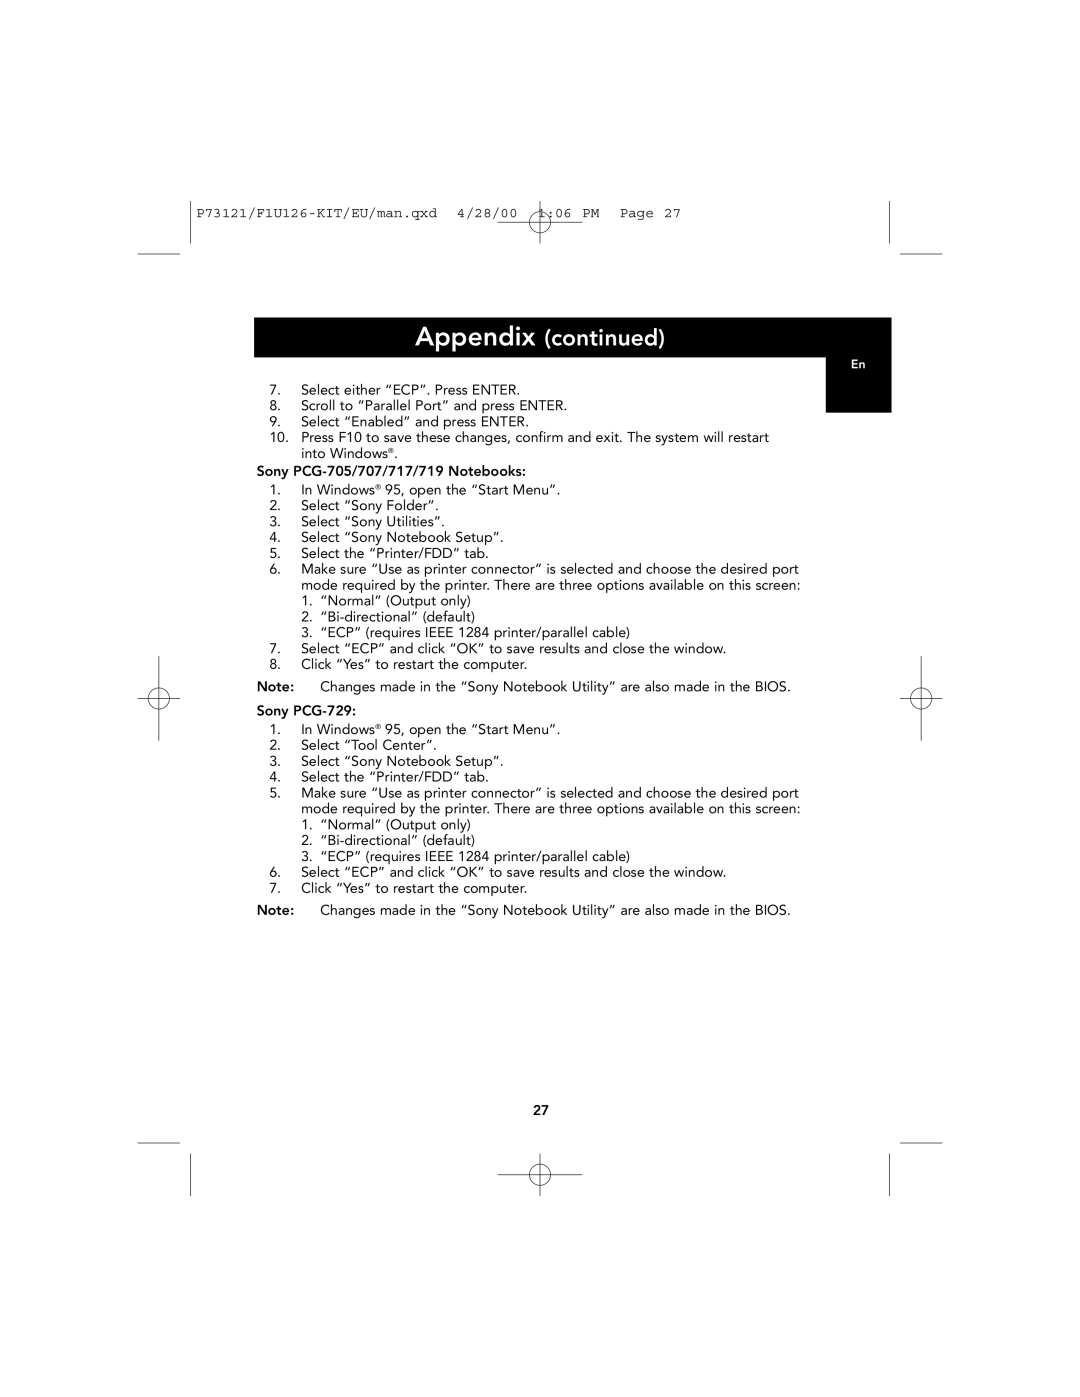 Belkin user manual Appendix continued, P73121/F1U126-KIT/EU/man.qxd 4/28/00 106 PM Page 